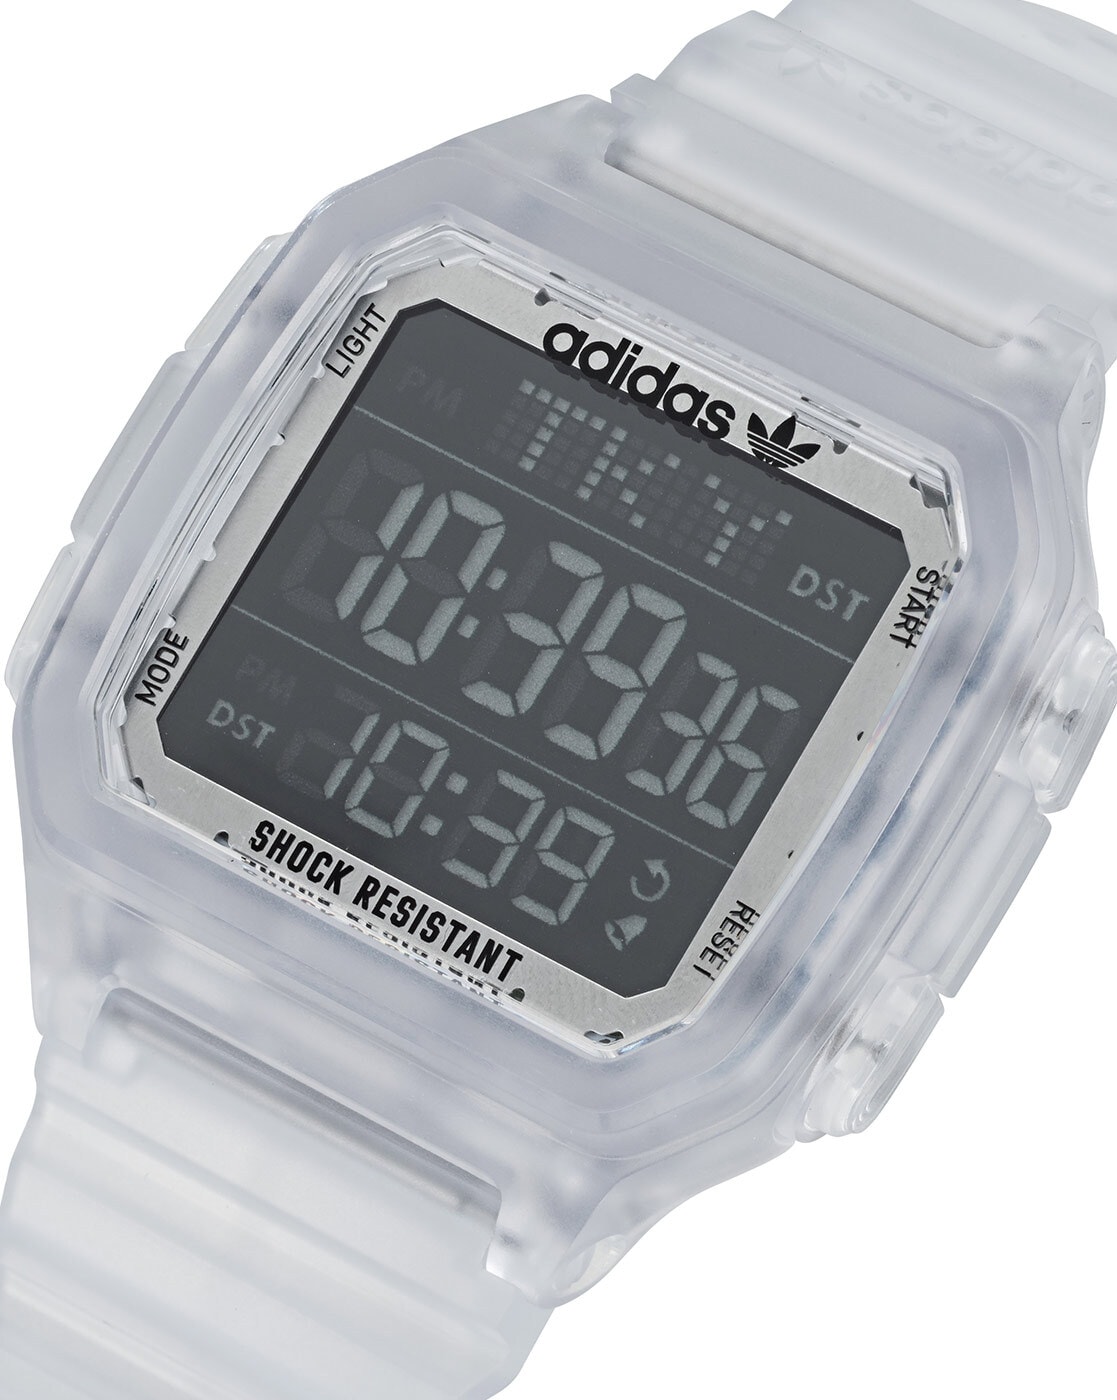 Skmei 1545 Original Digital Waterproof watch Sport watch For Men Black White